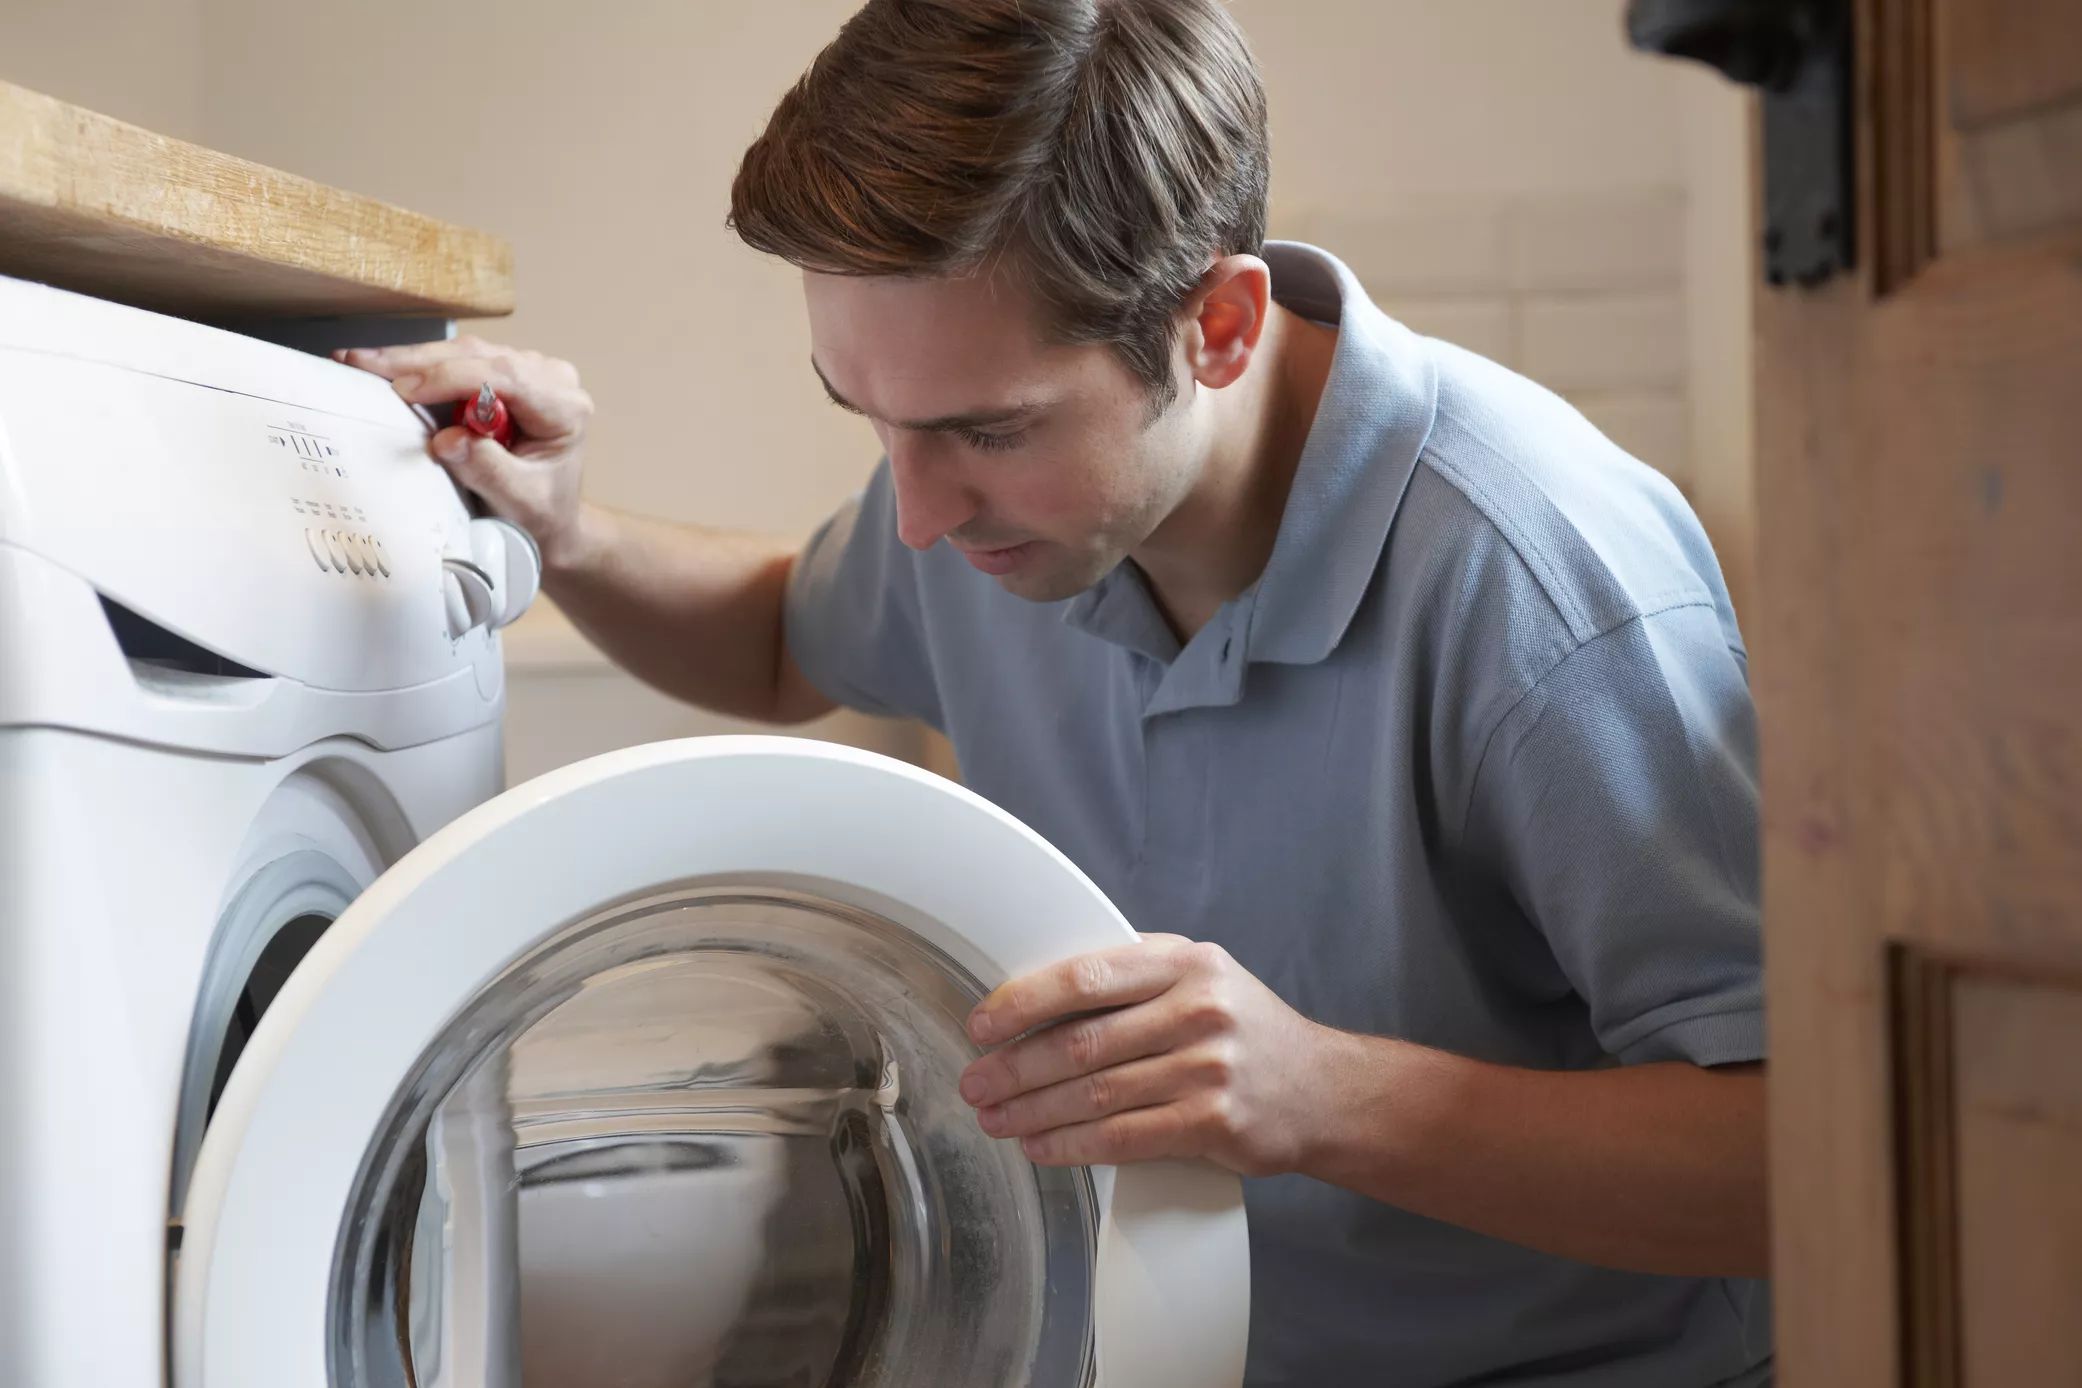 Một số lỗi thường khác gặp phải ở máy giặt như máy không hoạt động, máy rò rỉ nước hoặc máy giặt không cấp nước